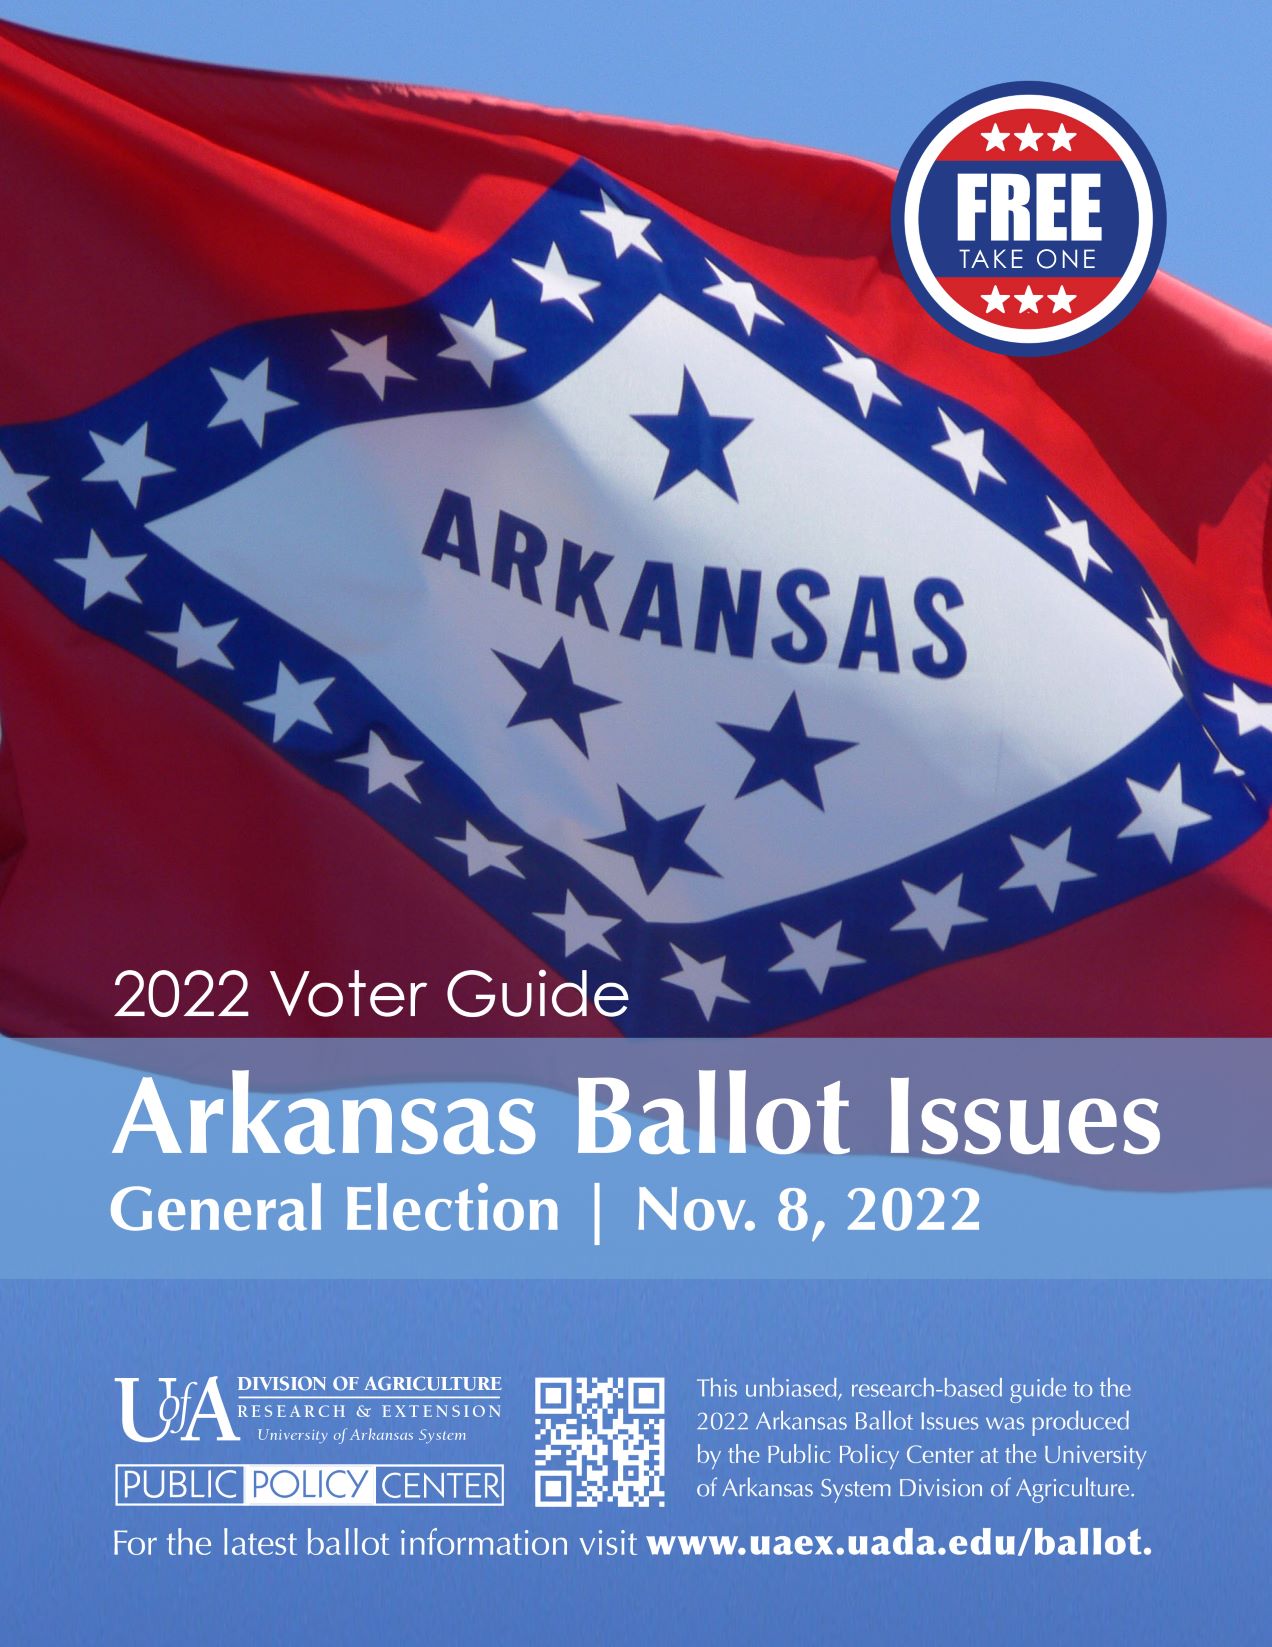 Cover of 2022 Arkansas Ballot Issue Voter Guide